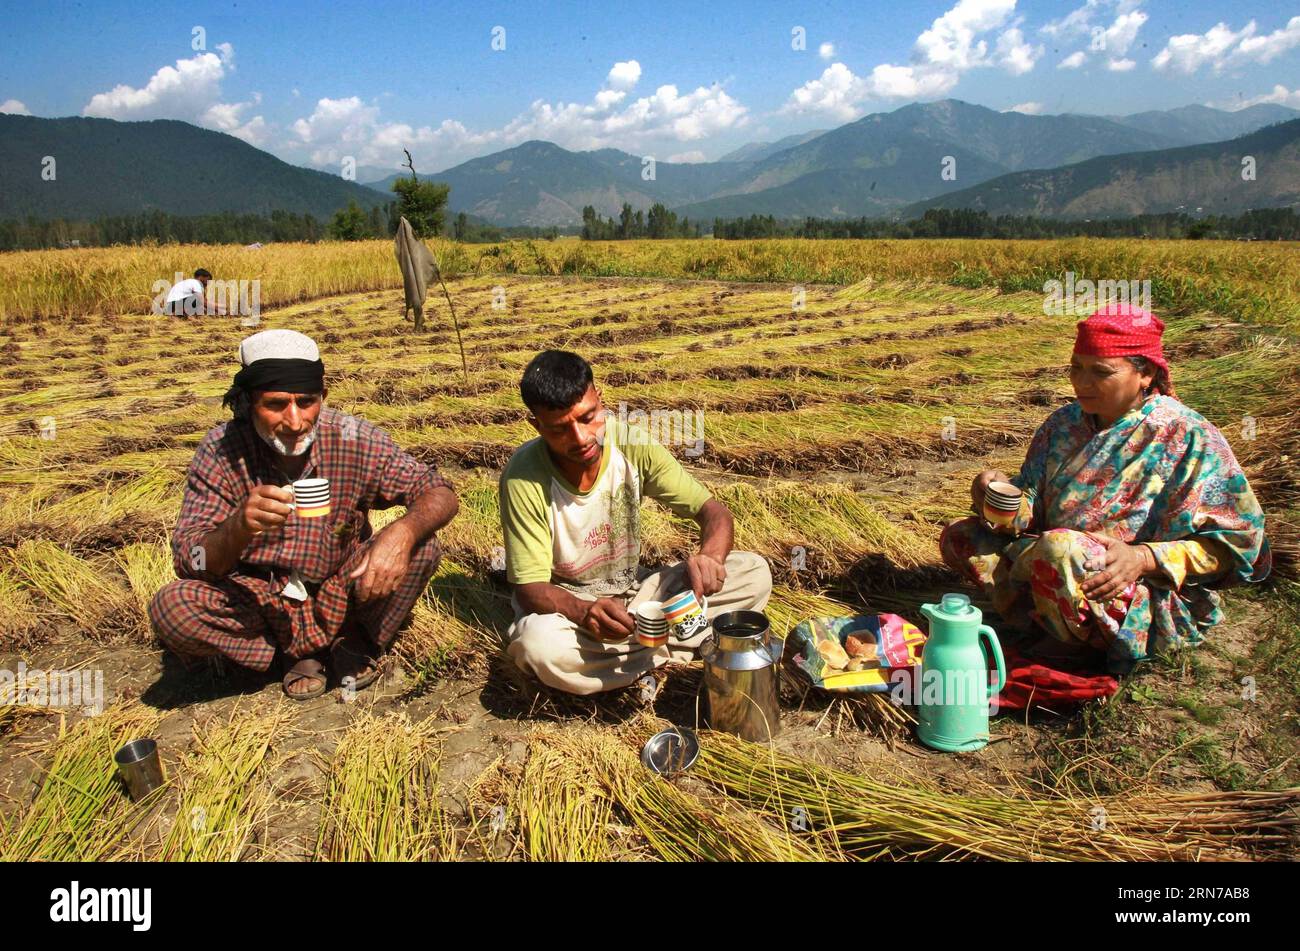 (150830) -- SRINAGAR, 30 agosto 2015 -- gli agricoltori del Kashmir prendono una pausa per il tè durante la raccolta delle risaie nel villaggio di Dewar nella zona di Lolab nel distretto di Kupwara, circa 115 km a nord di Srinagar, capitale estiva del Kashmir controllato dagli indiani, 30 agosto 2015. La stagione del raccolto delle risaie è iniziata nel Kashmir controllato dagli indiani. Il riso è il cibo di base della valle del Kashmir. ) KASHMIR-SRINAGAR-PADDY HARVEST JavedxDar PUBLICATIONxNOTxINxCHN 150830 Srinagar Aug 30 2015 gli agricoltori del Kashmir prendono una pausa del tè durante la raccolta della Paddy AL Dewar Village nell'area del distretto di Kupwara a circa 115 km a nord di Srinagar capitale estiva dell'India Foto Stock